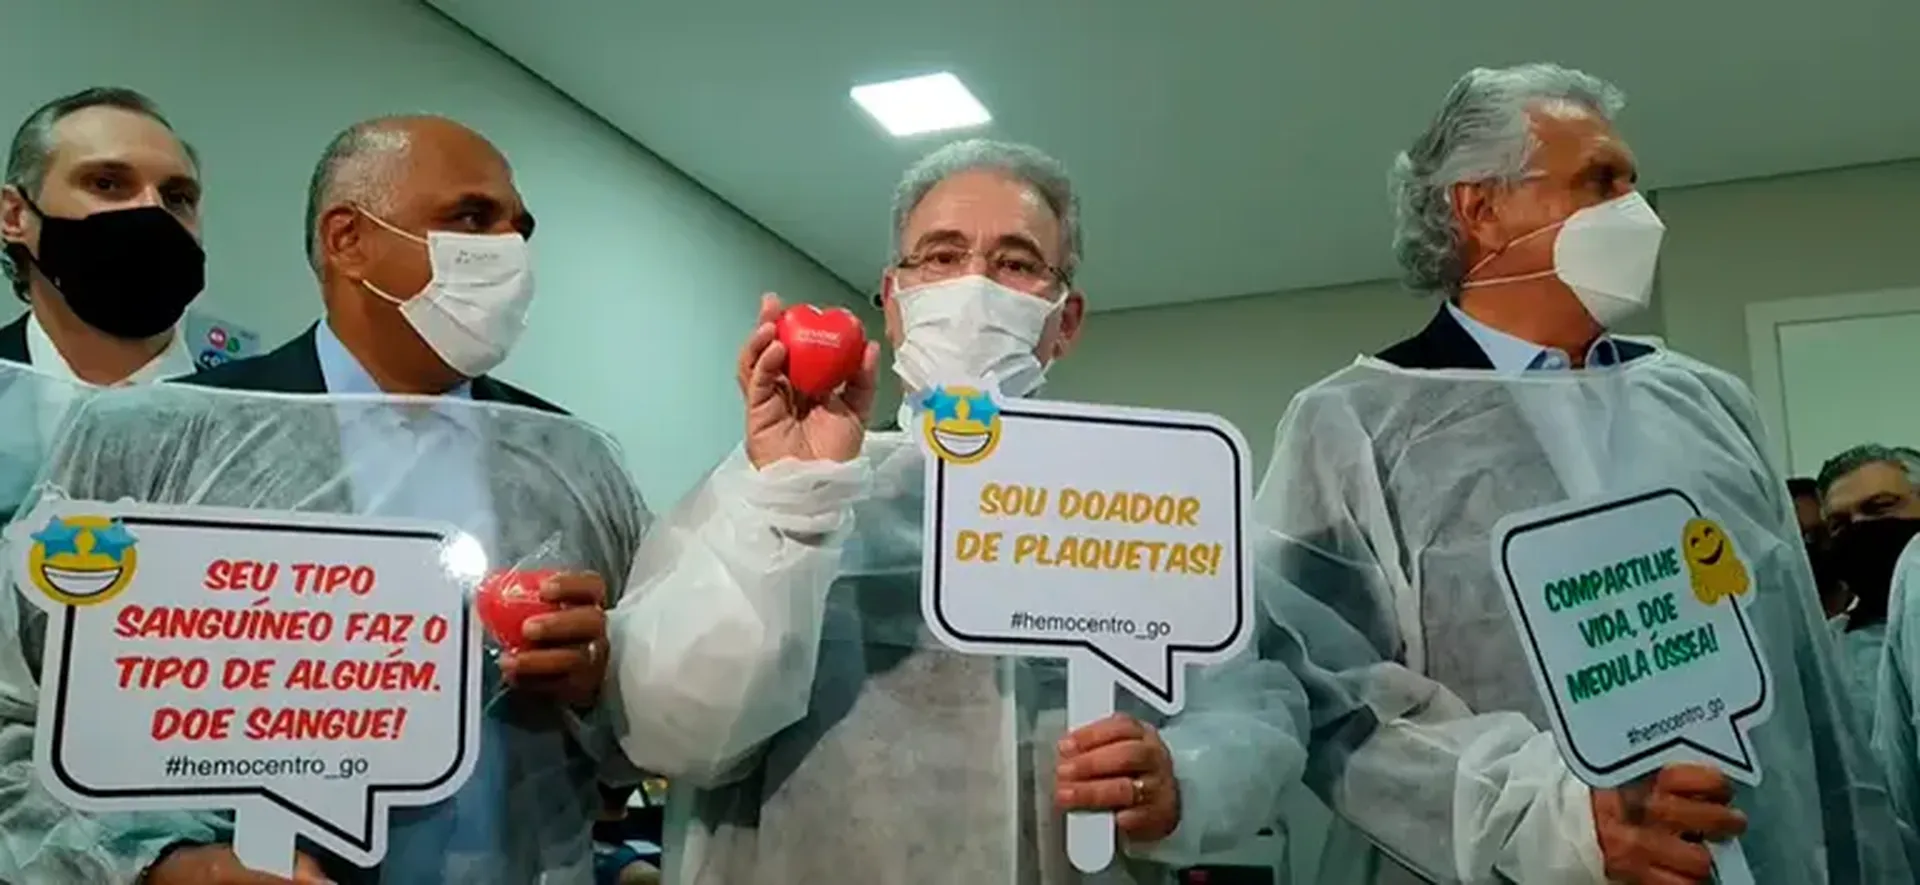 Ministro da Saúde visita maior hemocentro do Brasil em Goiânia (GO)